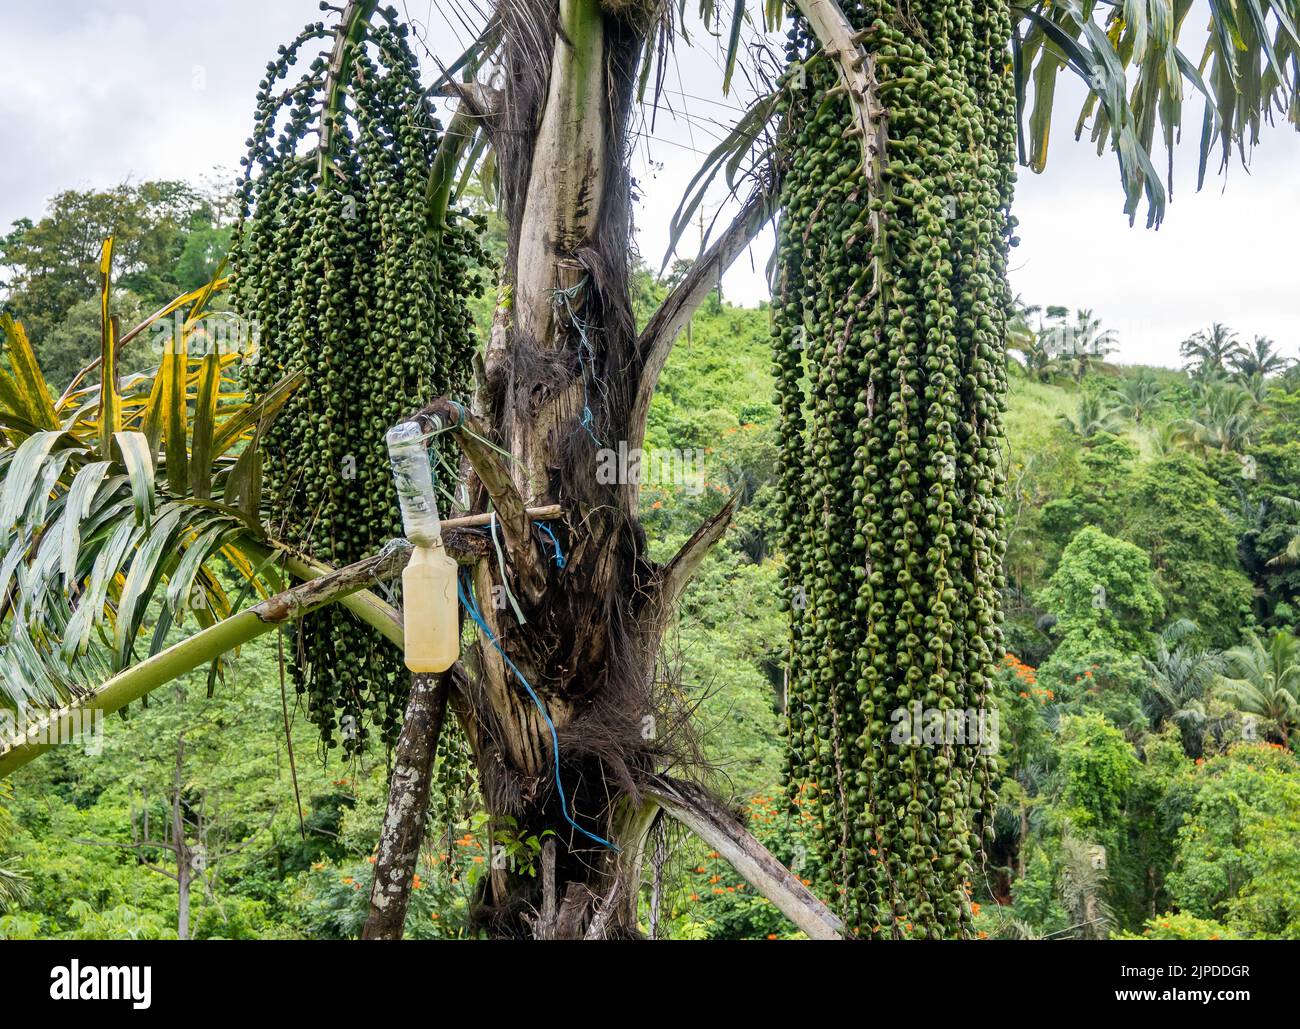 Il flacone e la caraffa di plastica vengono utilizzati per raccogliere il sap dalla palma. Sulawesi, Indonesia. Foto Stock